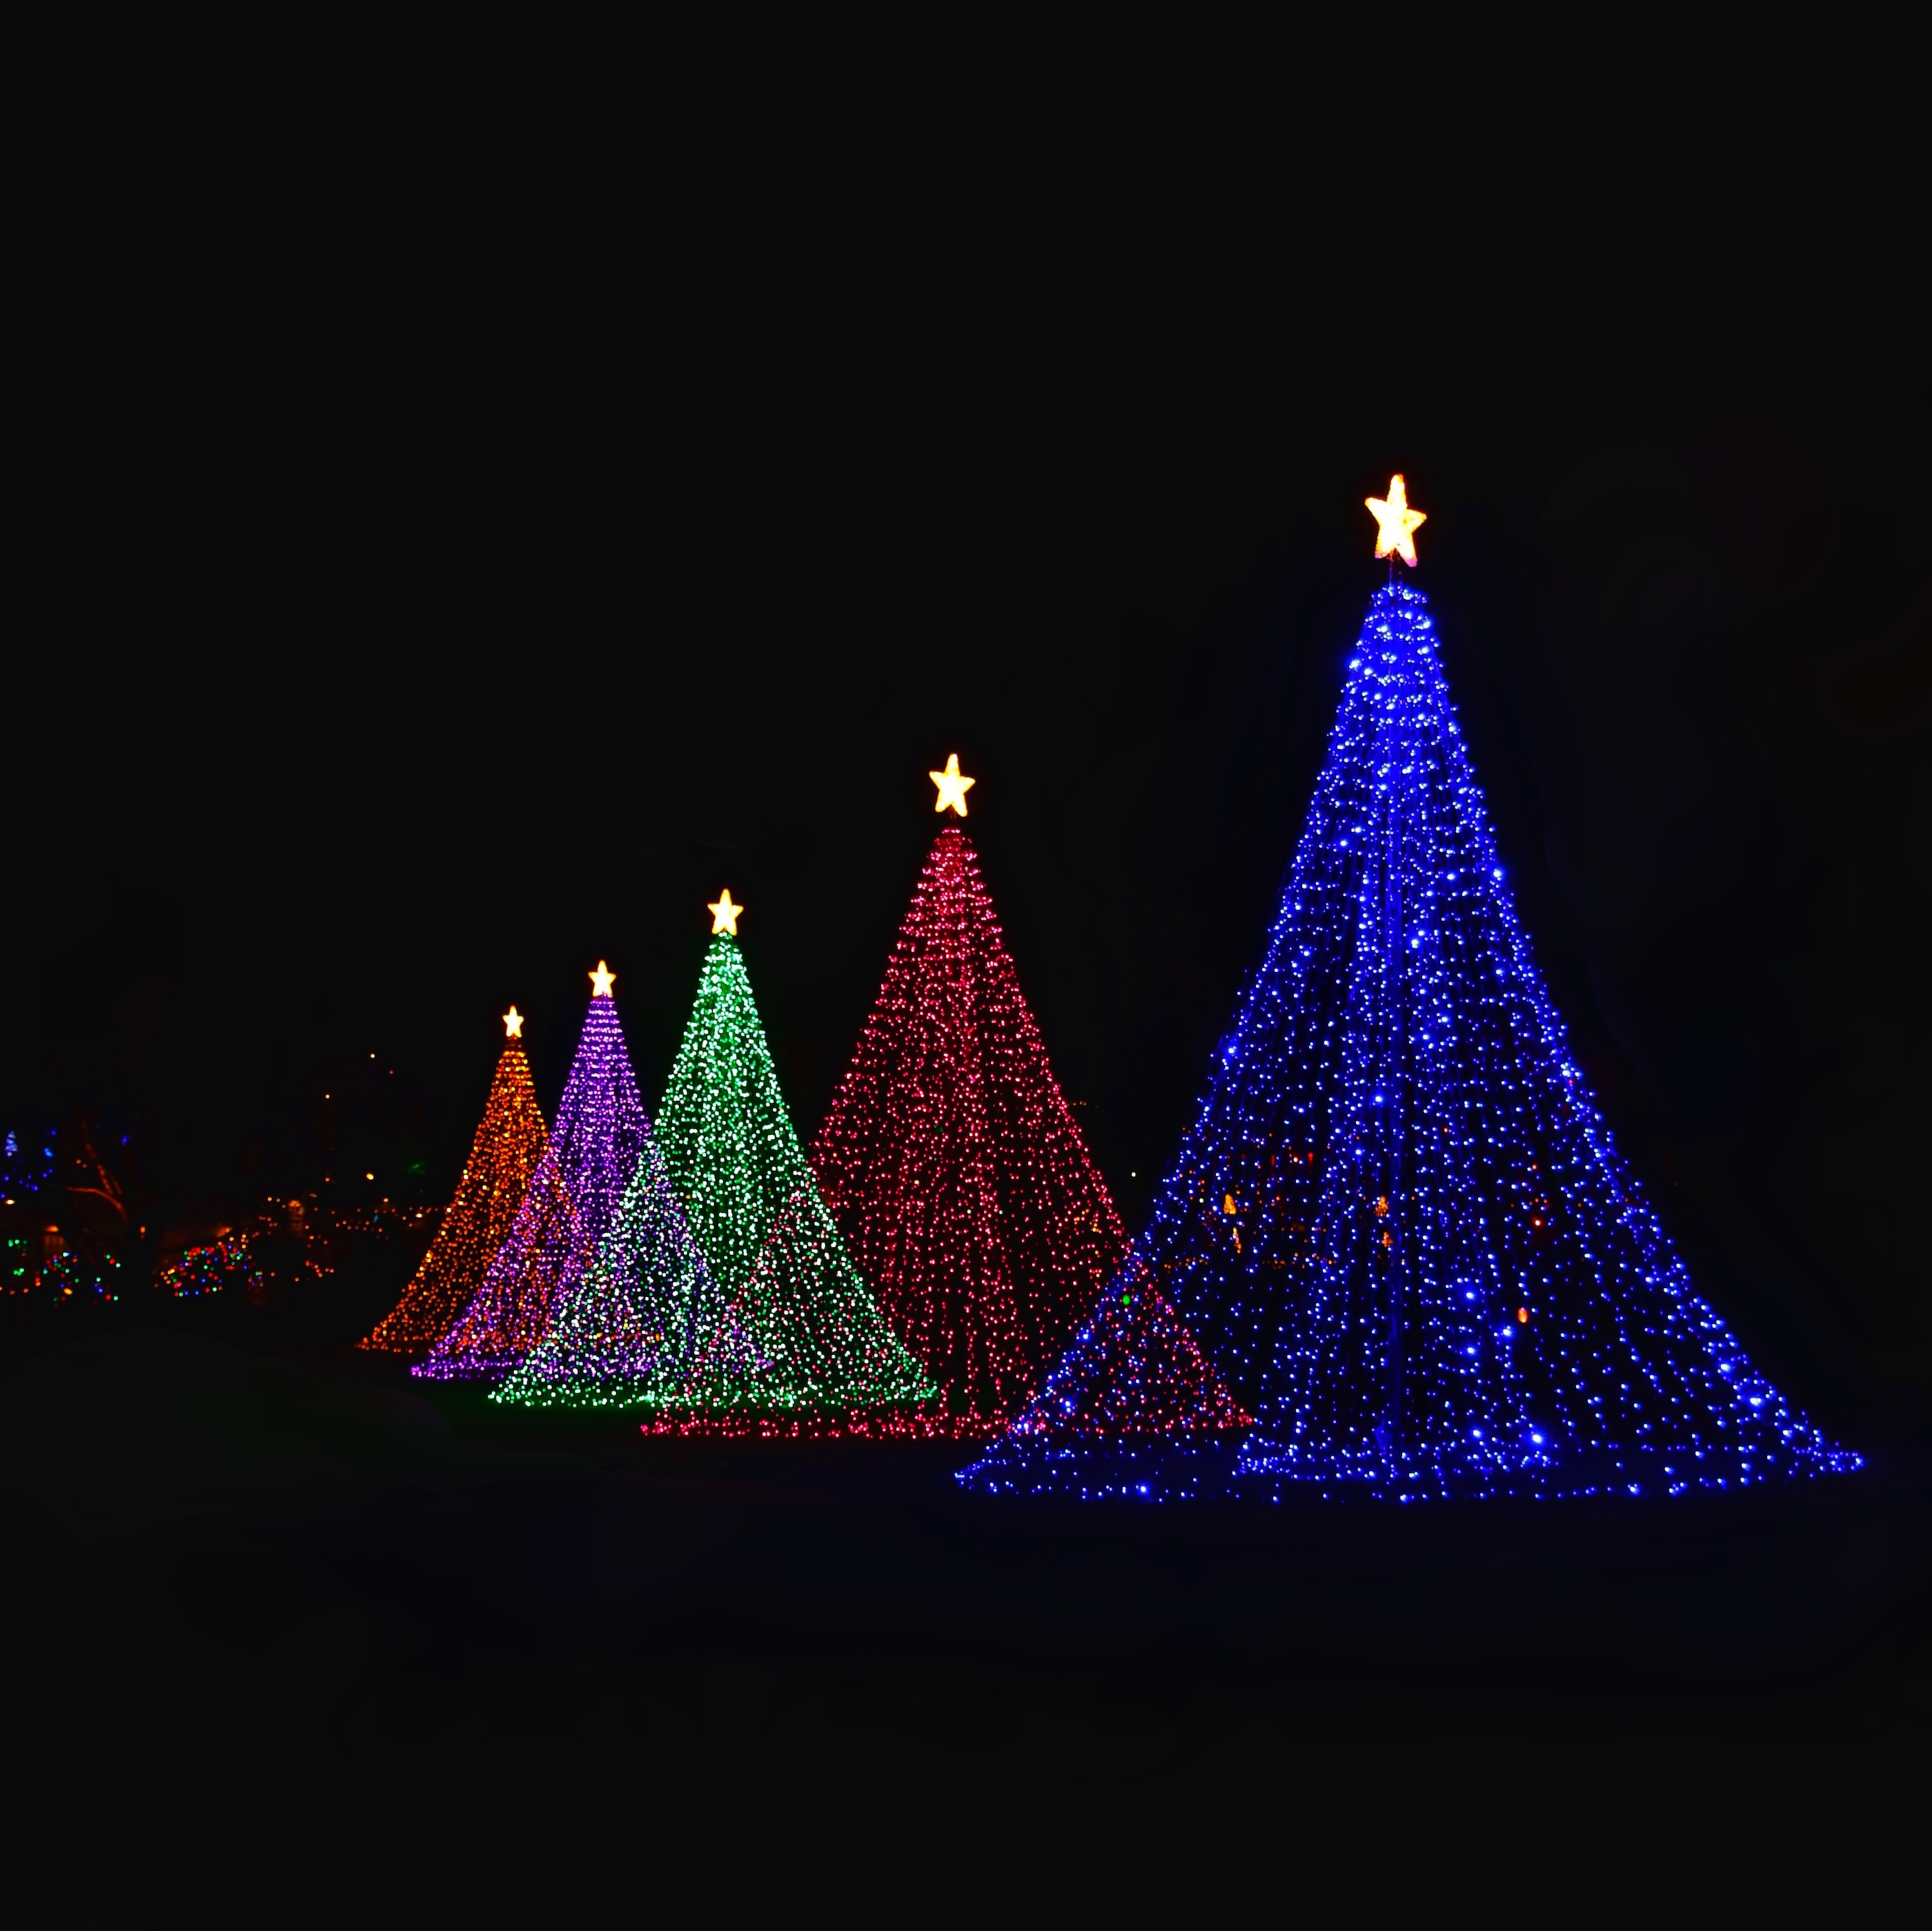 Weihnachten – Bunte Kegel aus Lichterketten mit einem Stern auf der Spitze